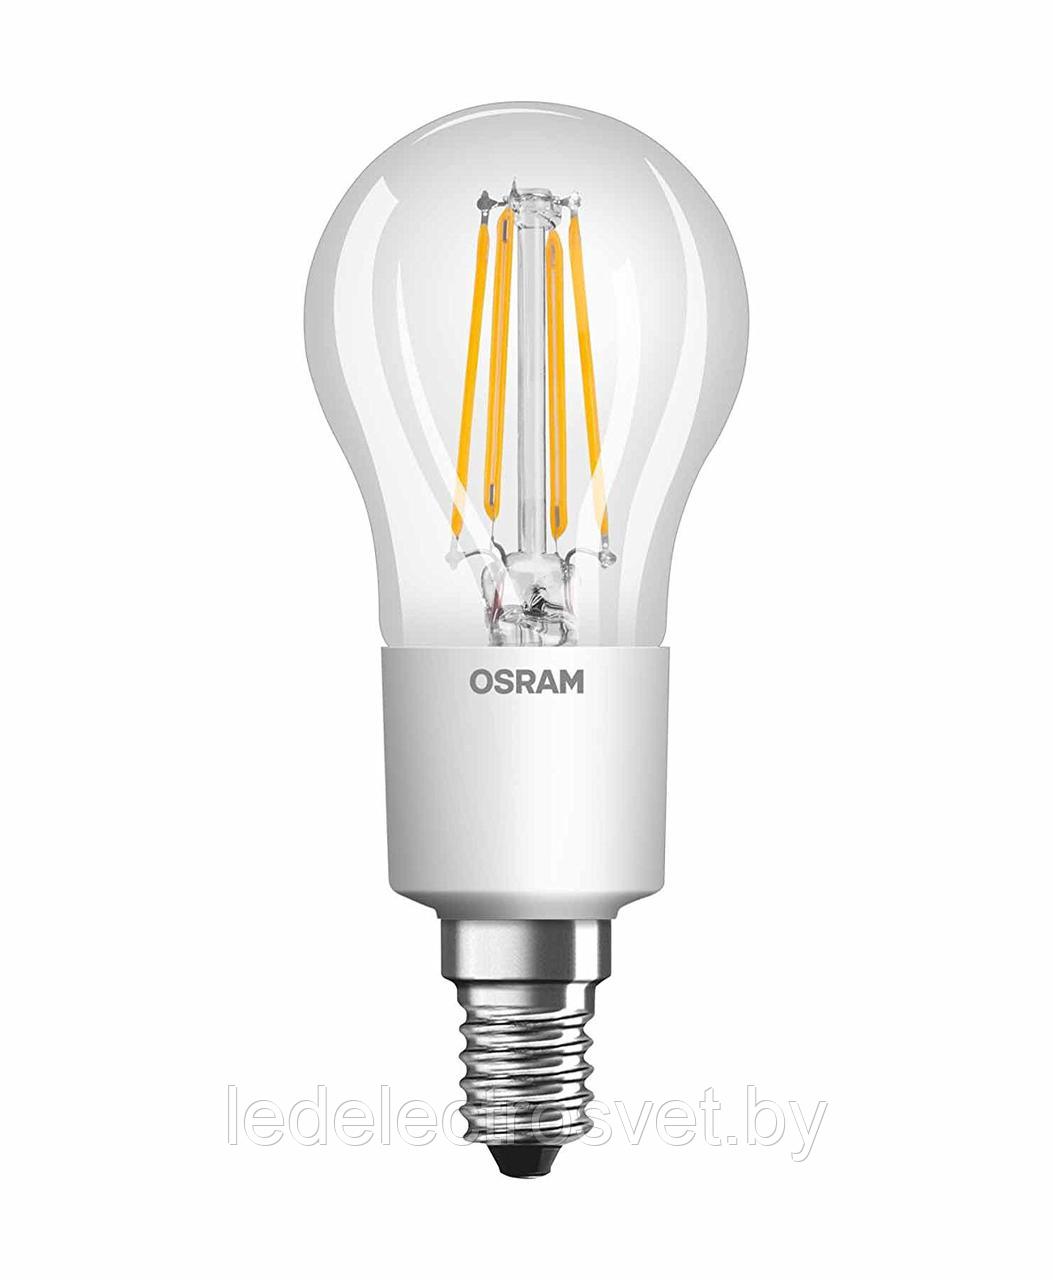 Филаментная светодиодная лампа Parathom Retrofit CLBА 4W (замена40Вт), теплый белый свет, E14, прозрачная